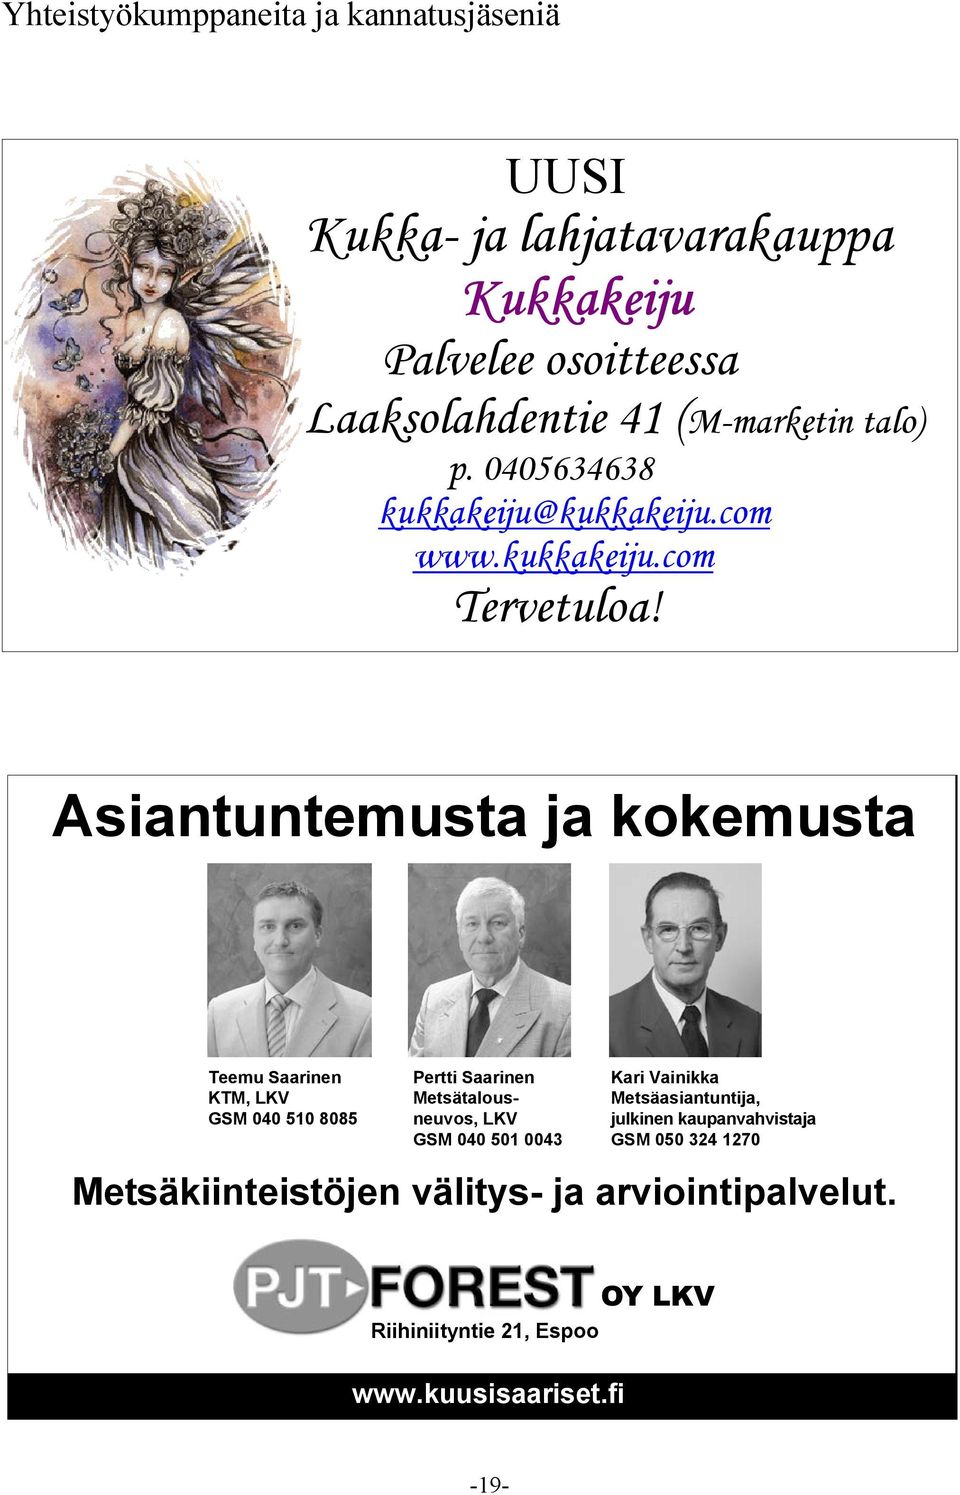 0043 Kari Vainikka Metsäasiantuntija, julkinen kaupanvahvistaja GSM 050 324 1270